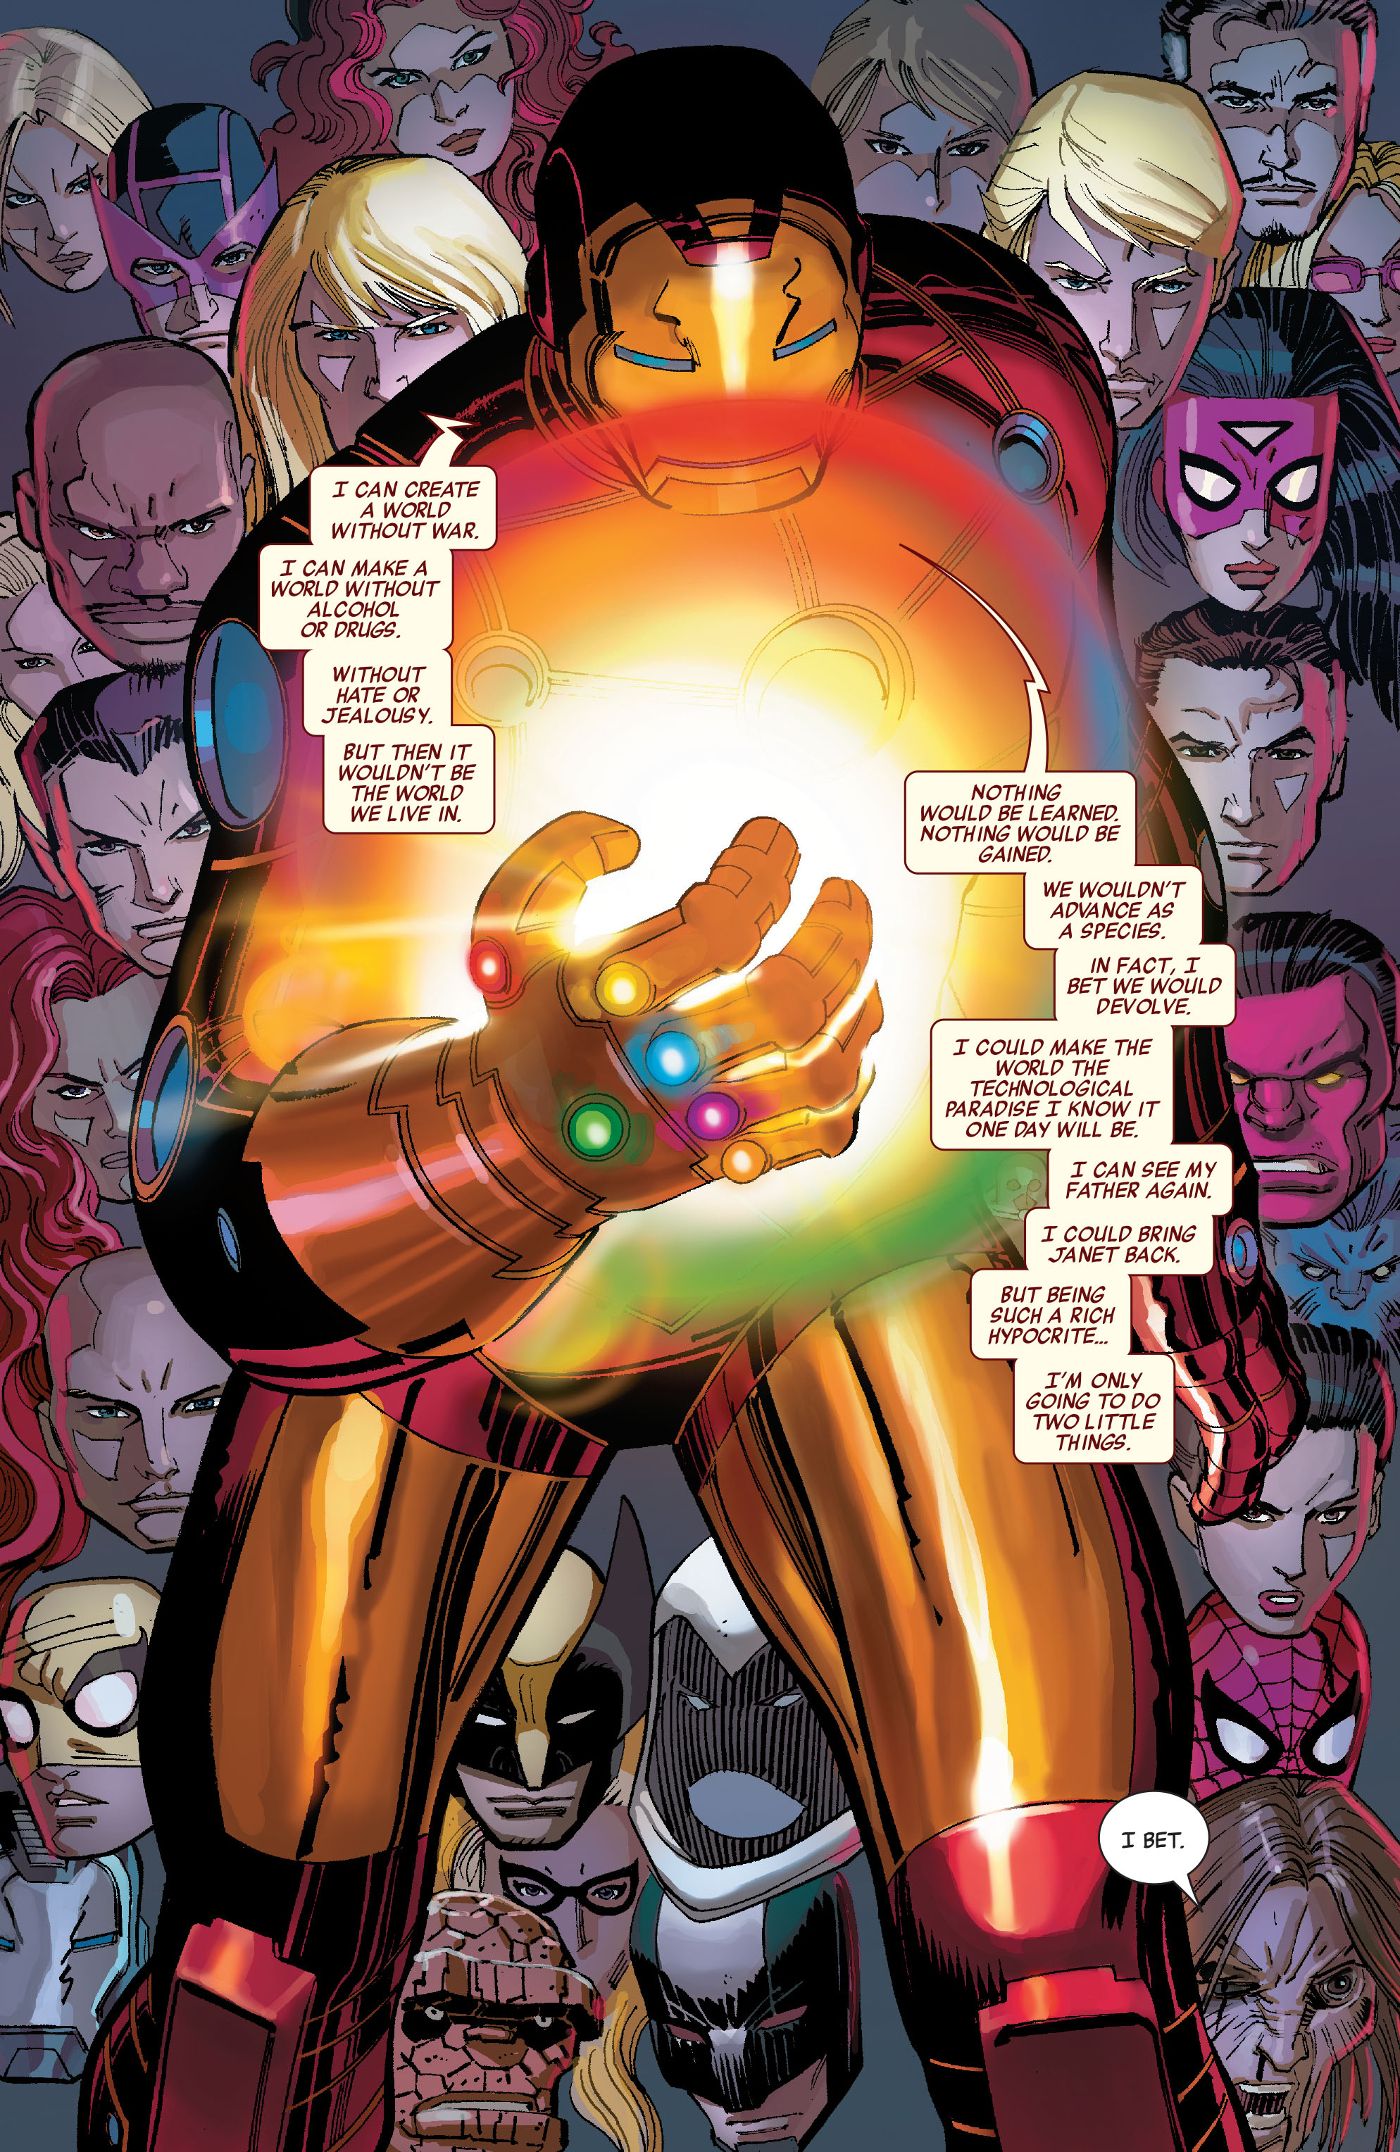 Iron Man uses Infinity Gauntlet Avengers comics